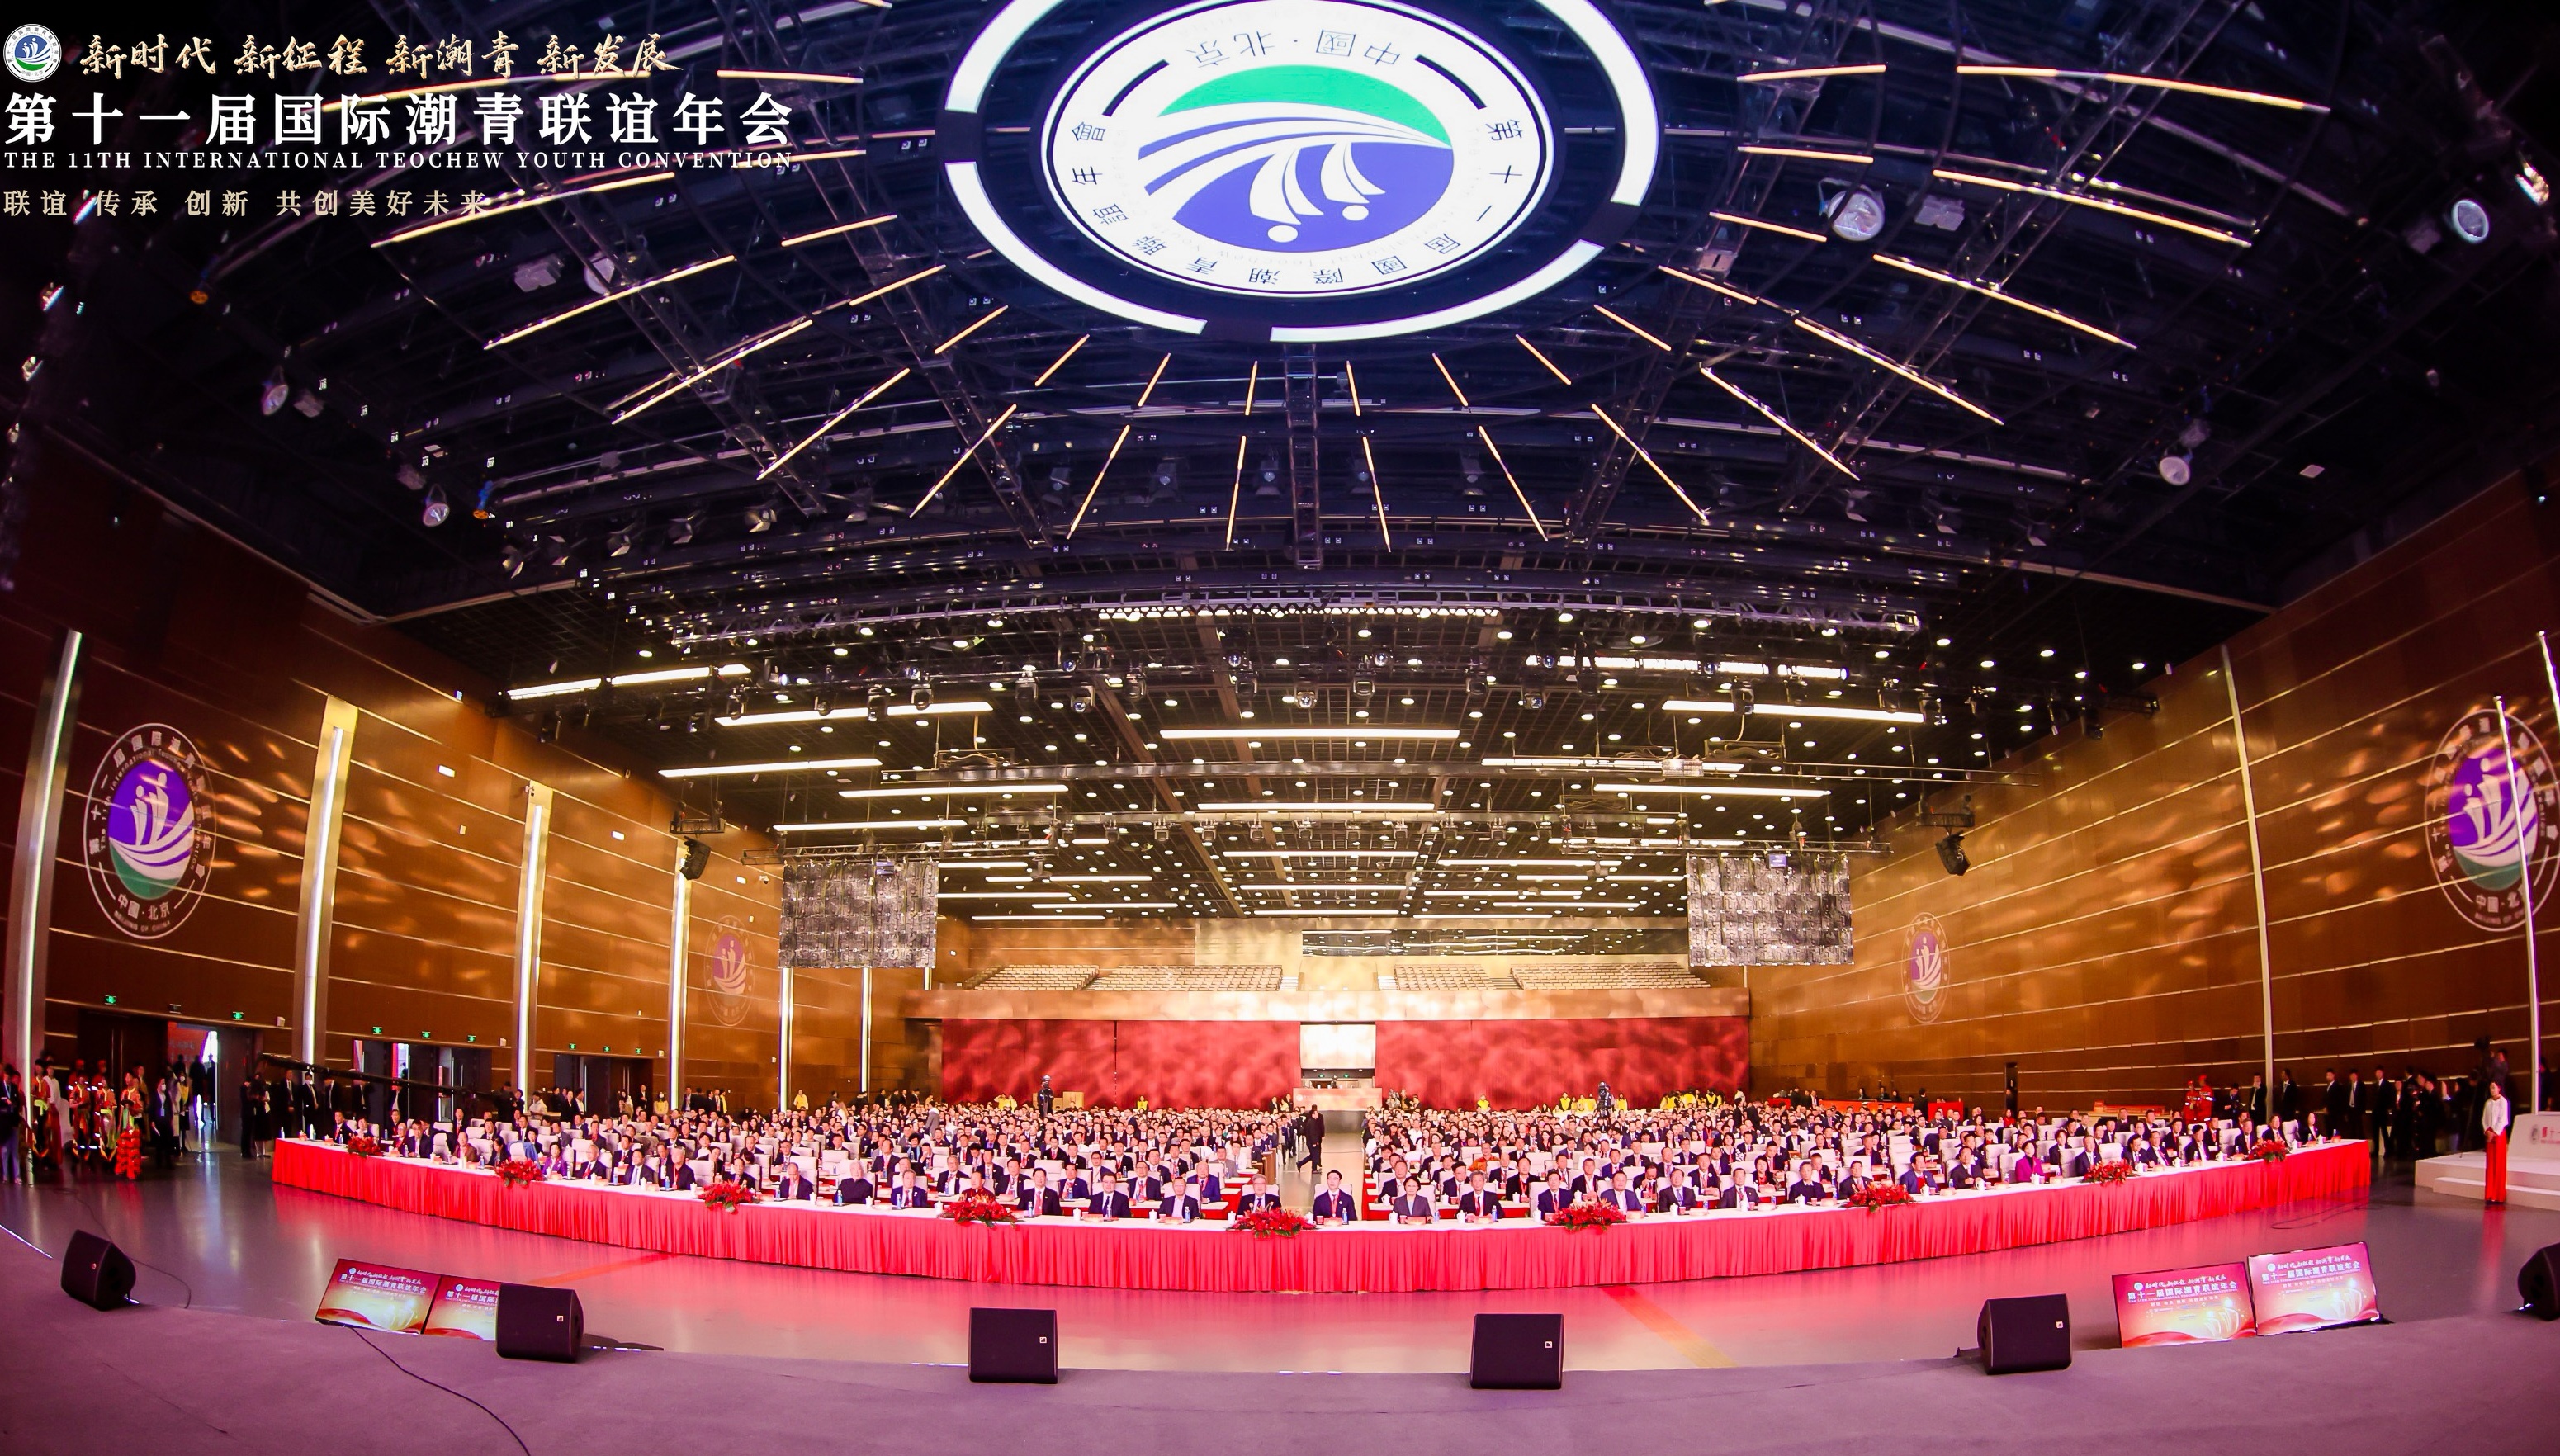 第十一届国际潮青联谊年会在北京隆重举行 大会荣聘我会黄瑞杰会长为荣誉主席(图13)